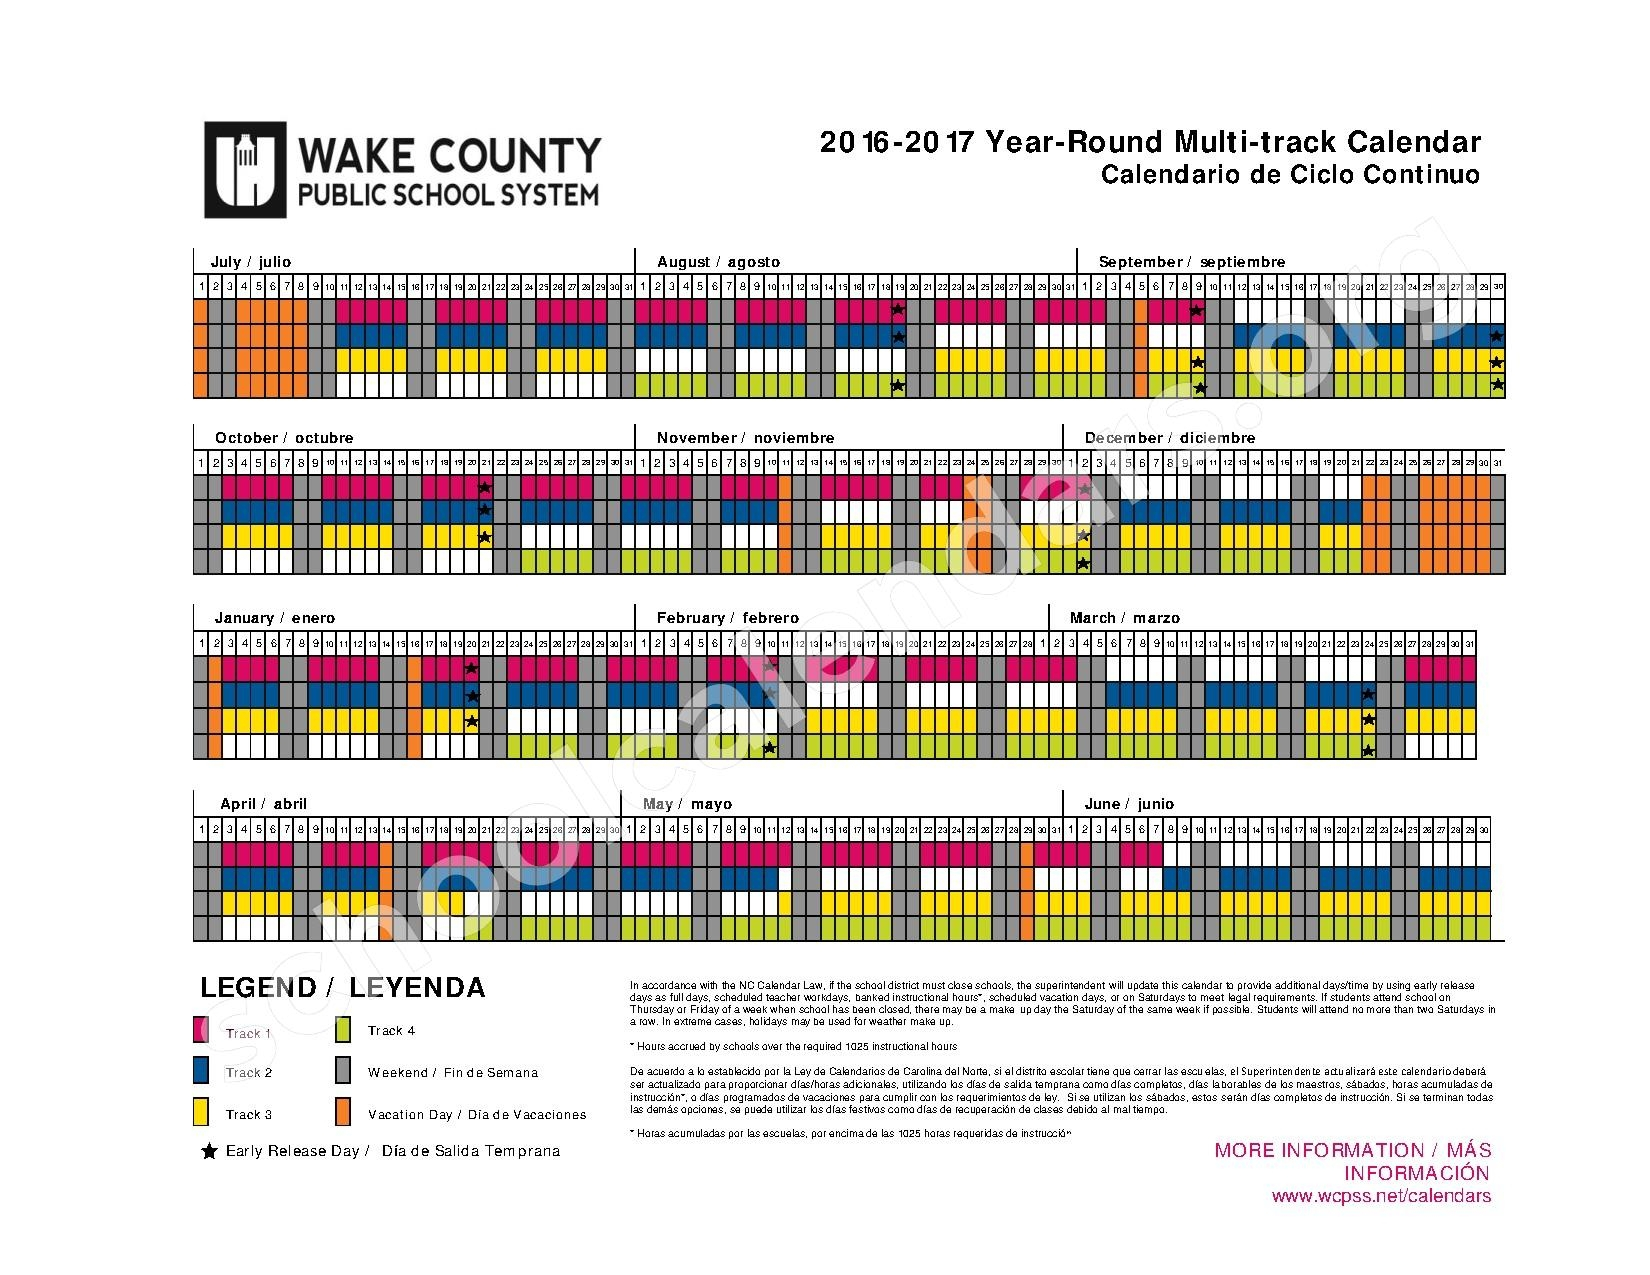 Year Round Wake County Calendar CountyCalendars net